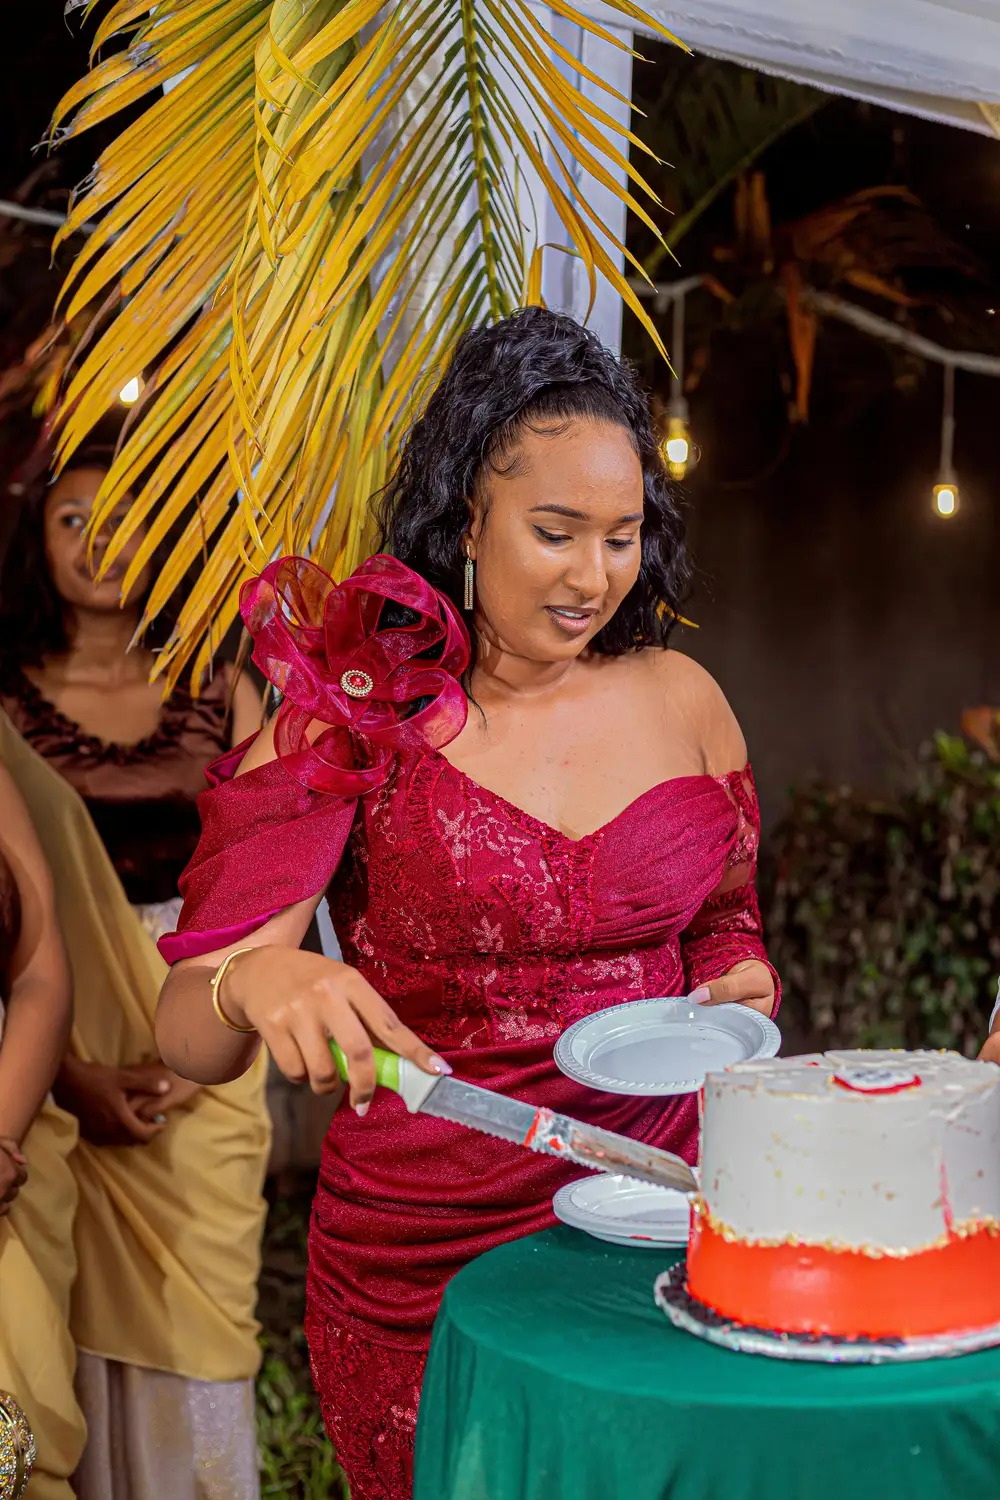 a beautiful woman cutting cake